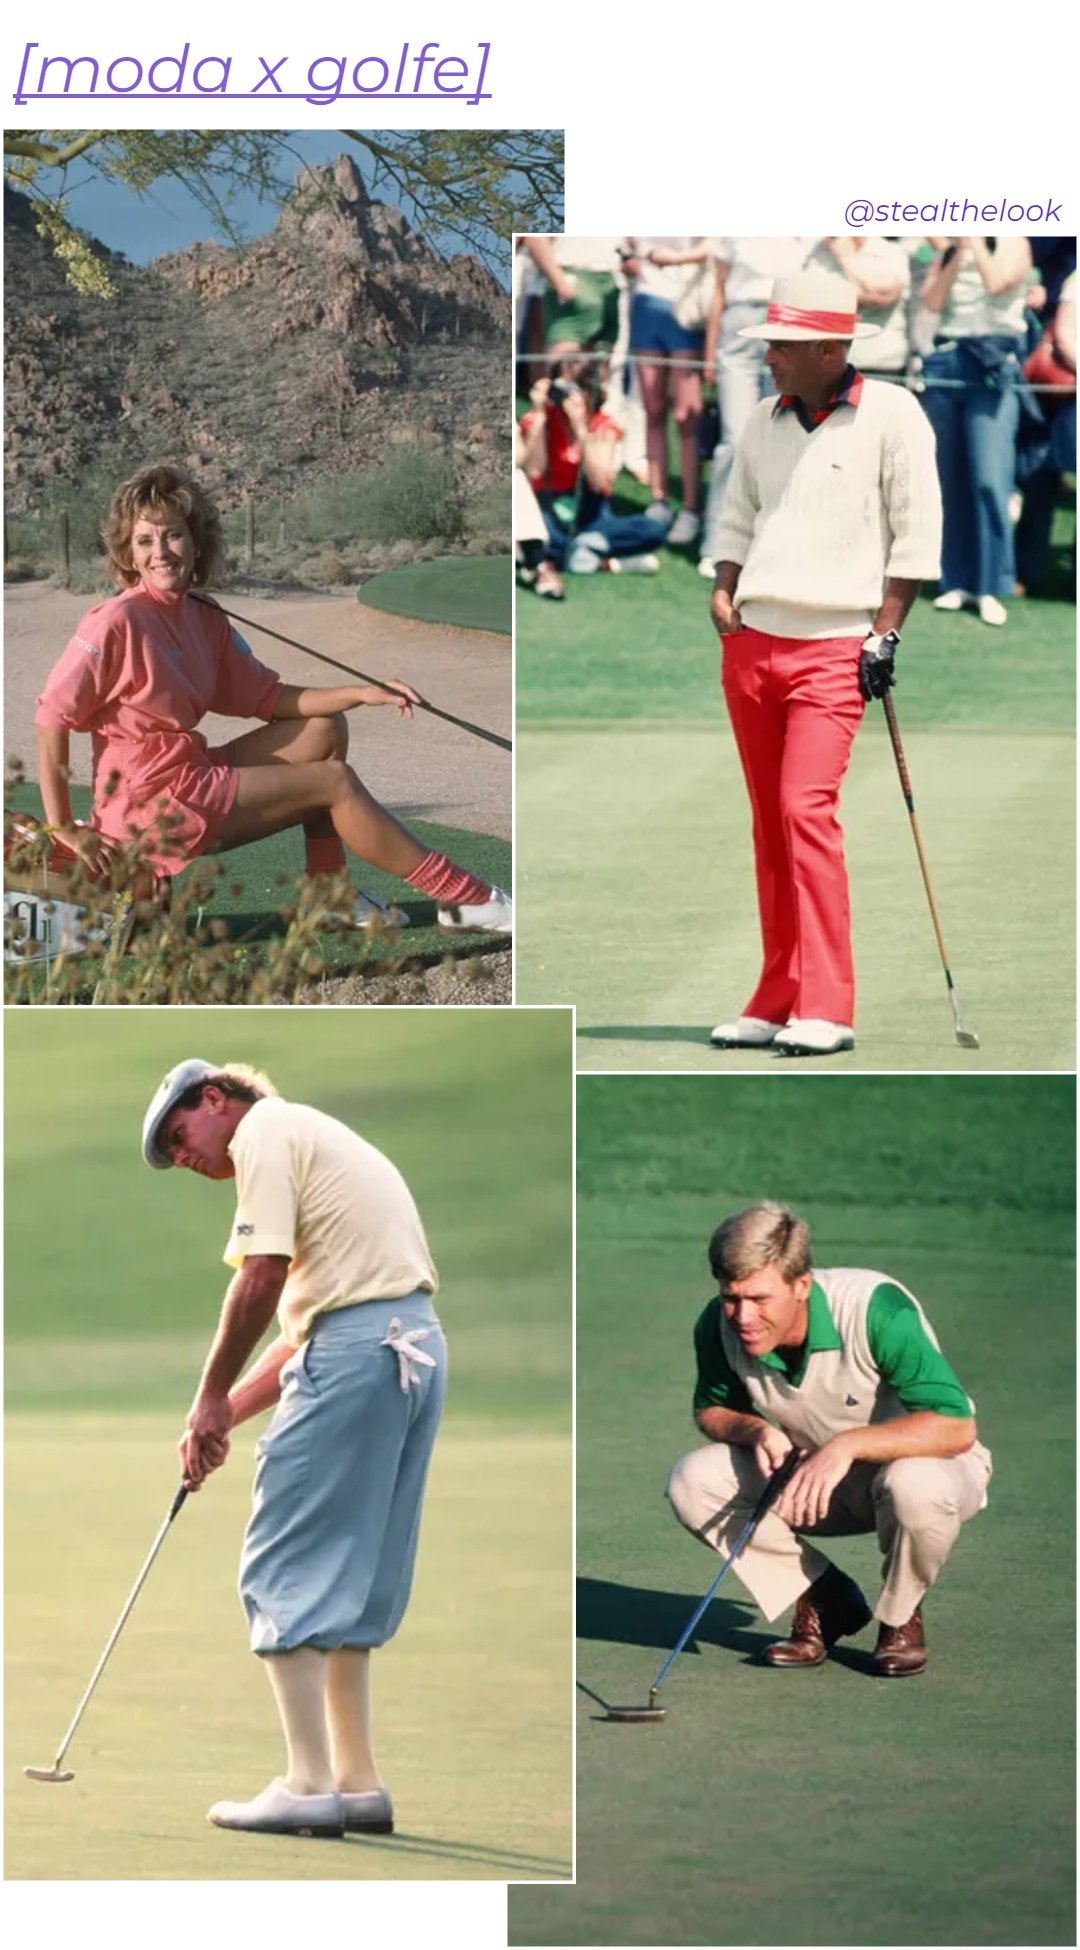 Jen Stephenson, Chi-Chi Rodriguez, Payne Stewart e Hal Sutton - roupas diversas - moda e golfe - verão - colagem de imagens - https://stealthelook.com.br